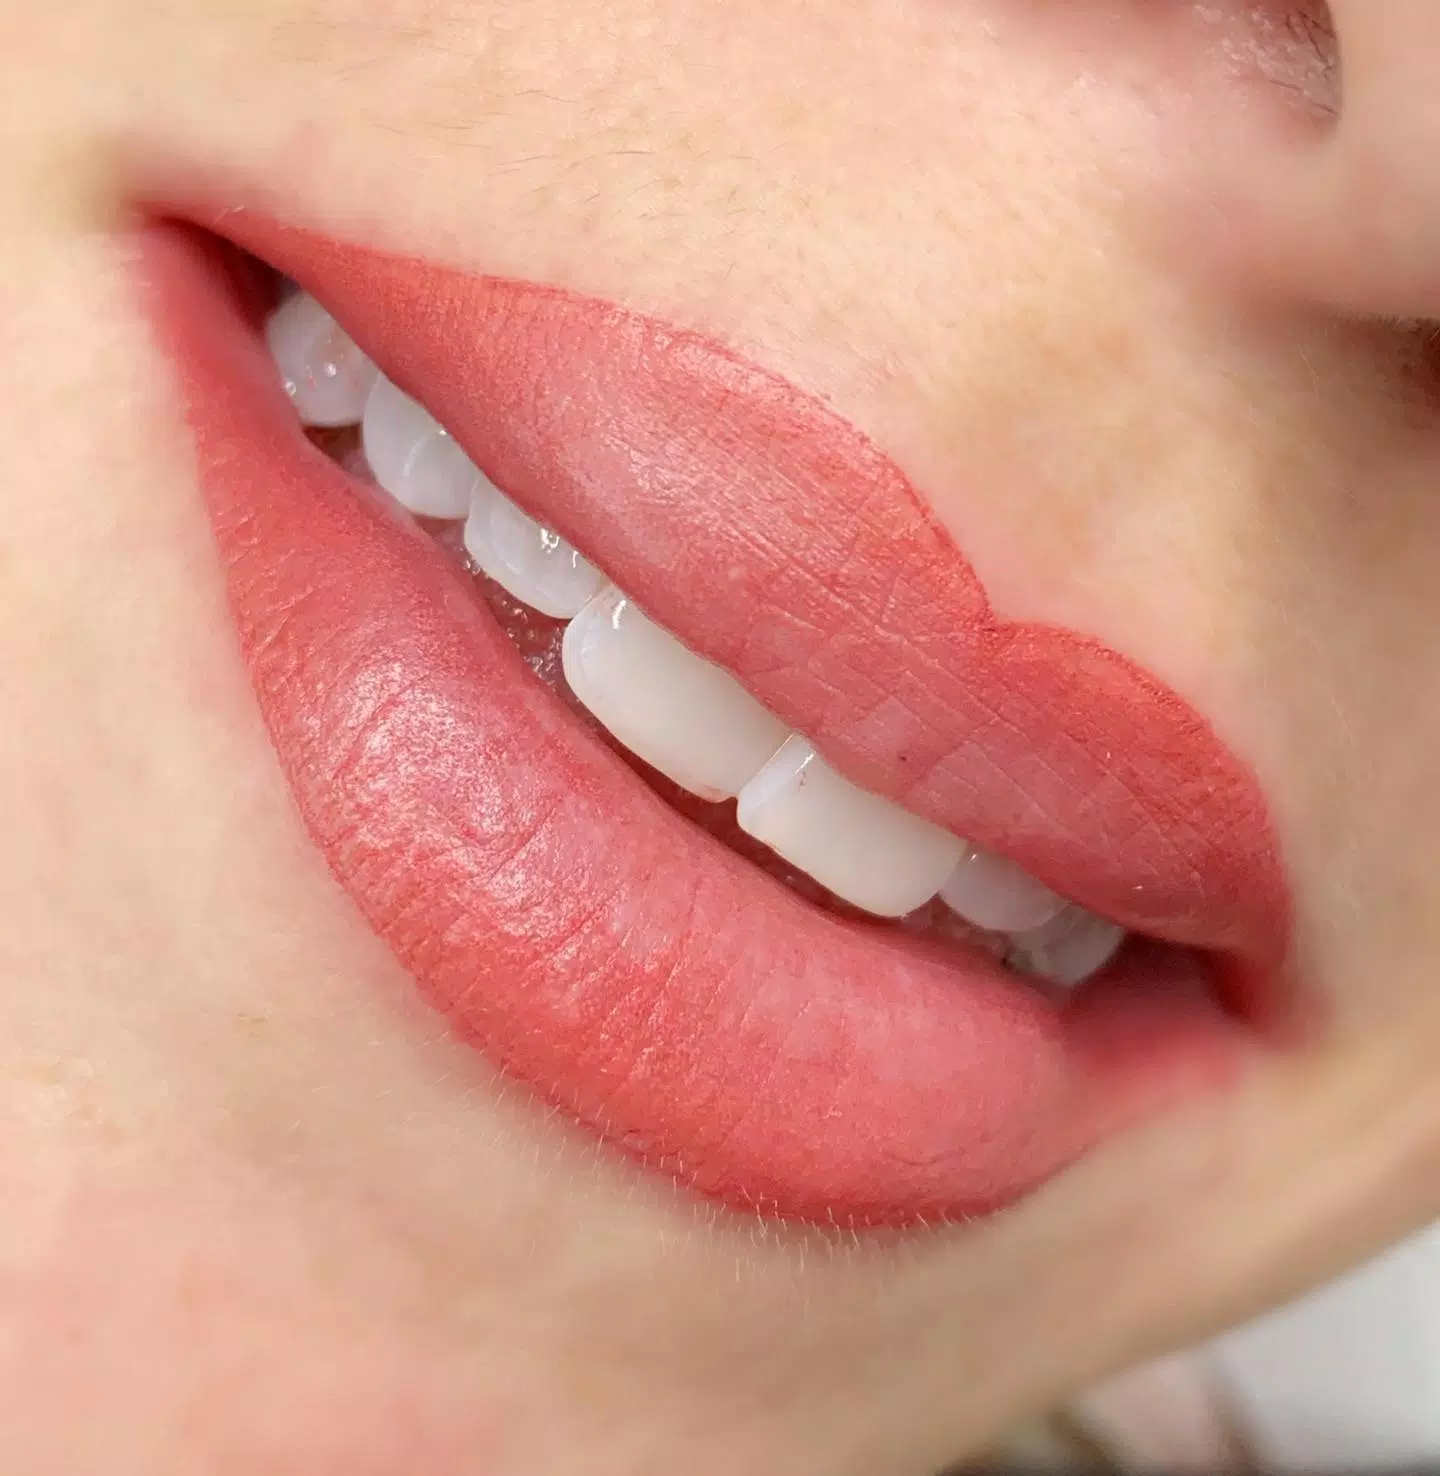 TLC Lips 🎀Heute konnte ich diese tollen Lippen pigmentieren. Es wurde eine Kontur gesetzt und hinein schattiert. Die Farbe wird noch ca. 30% heller.. nach der Abheilung bleibt ein Hauch von Farbe mit einer zarten Kontur. #lips #lipspigmentation #pmu #toplines #affolternamalbis #lippen #lippenpigmentieren #perfekt #immerschön #glossylips #aquarelllips